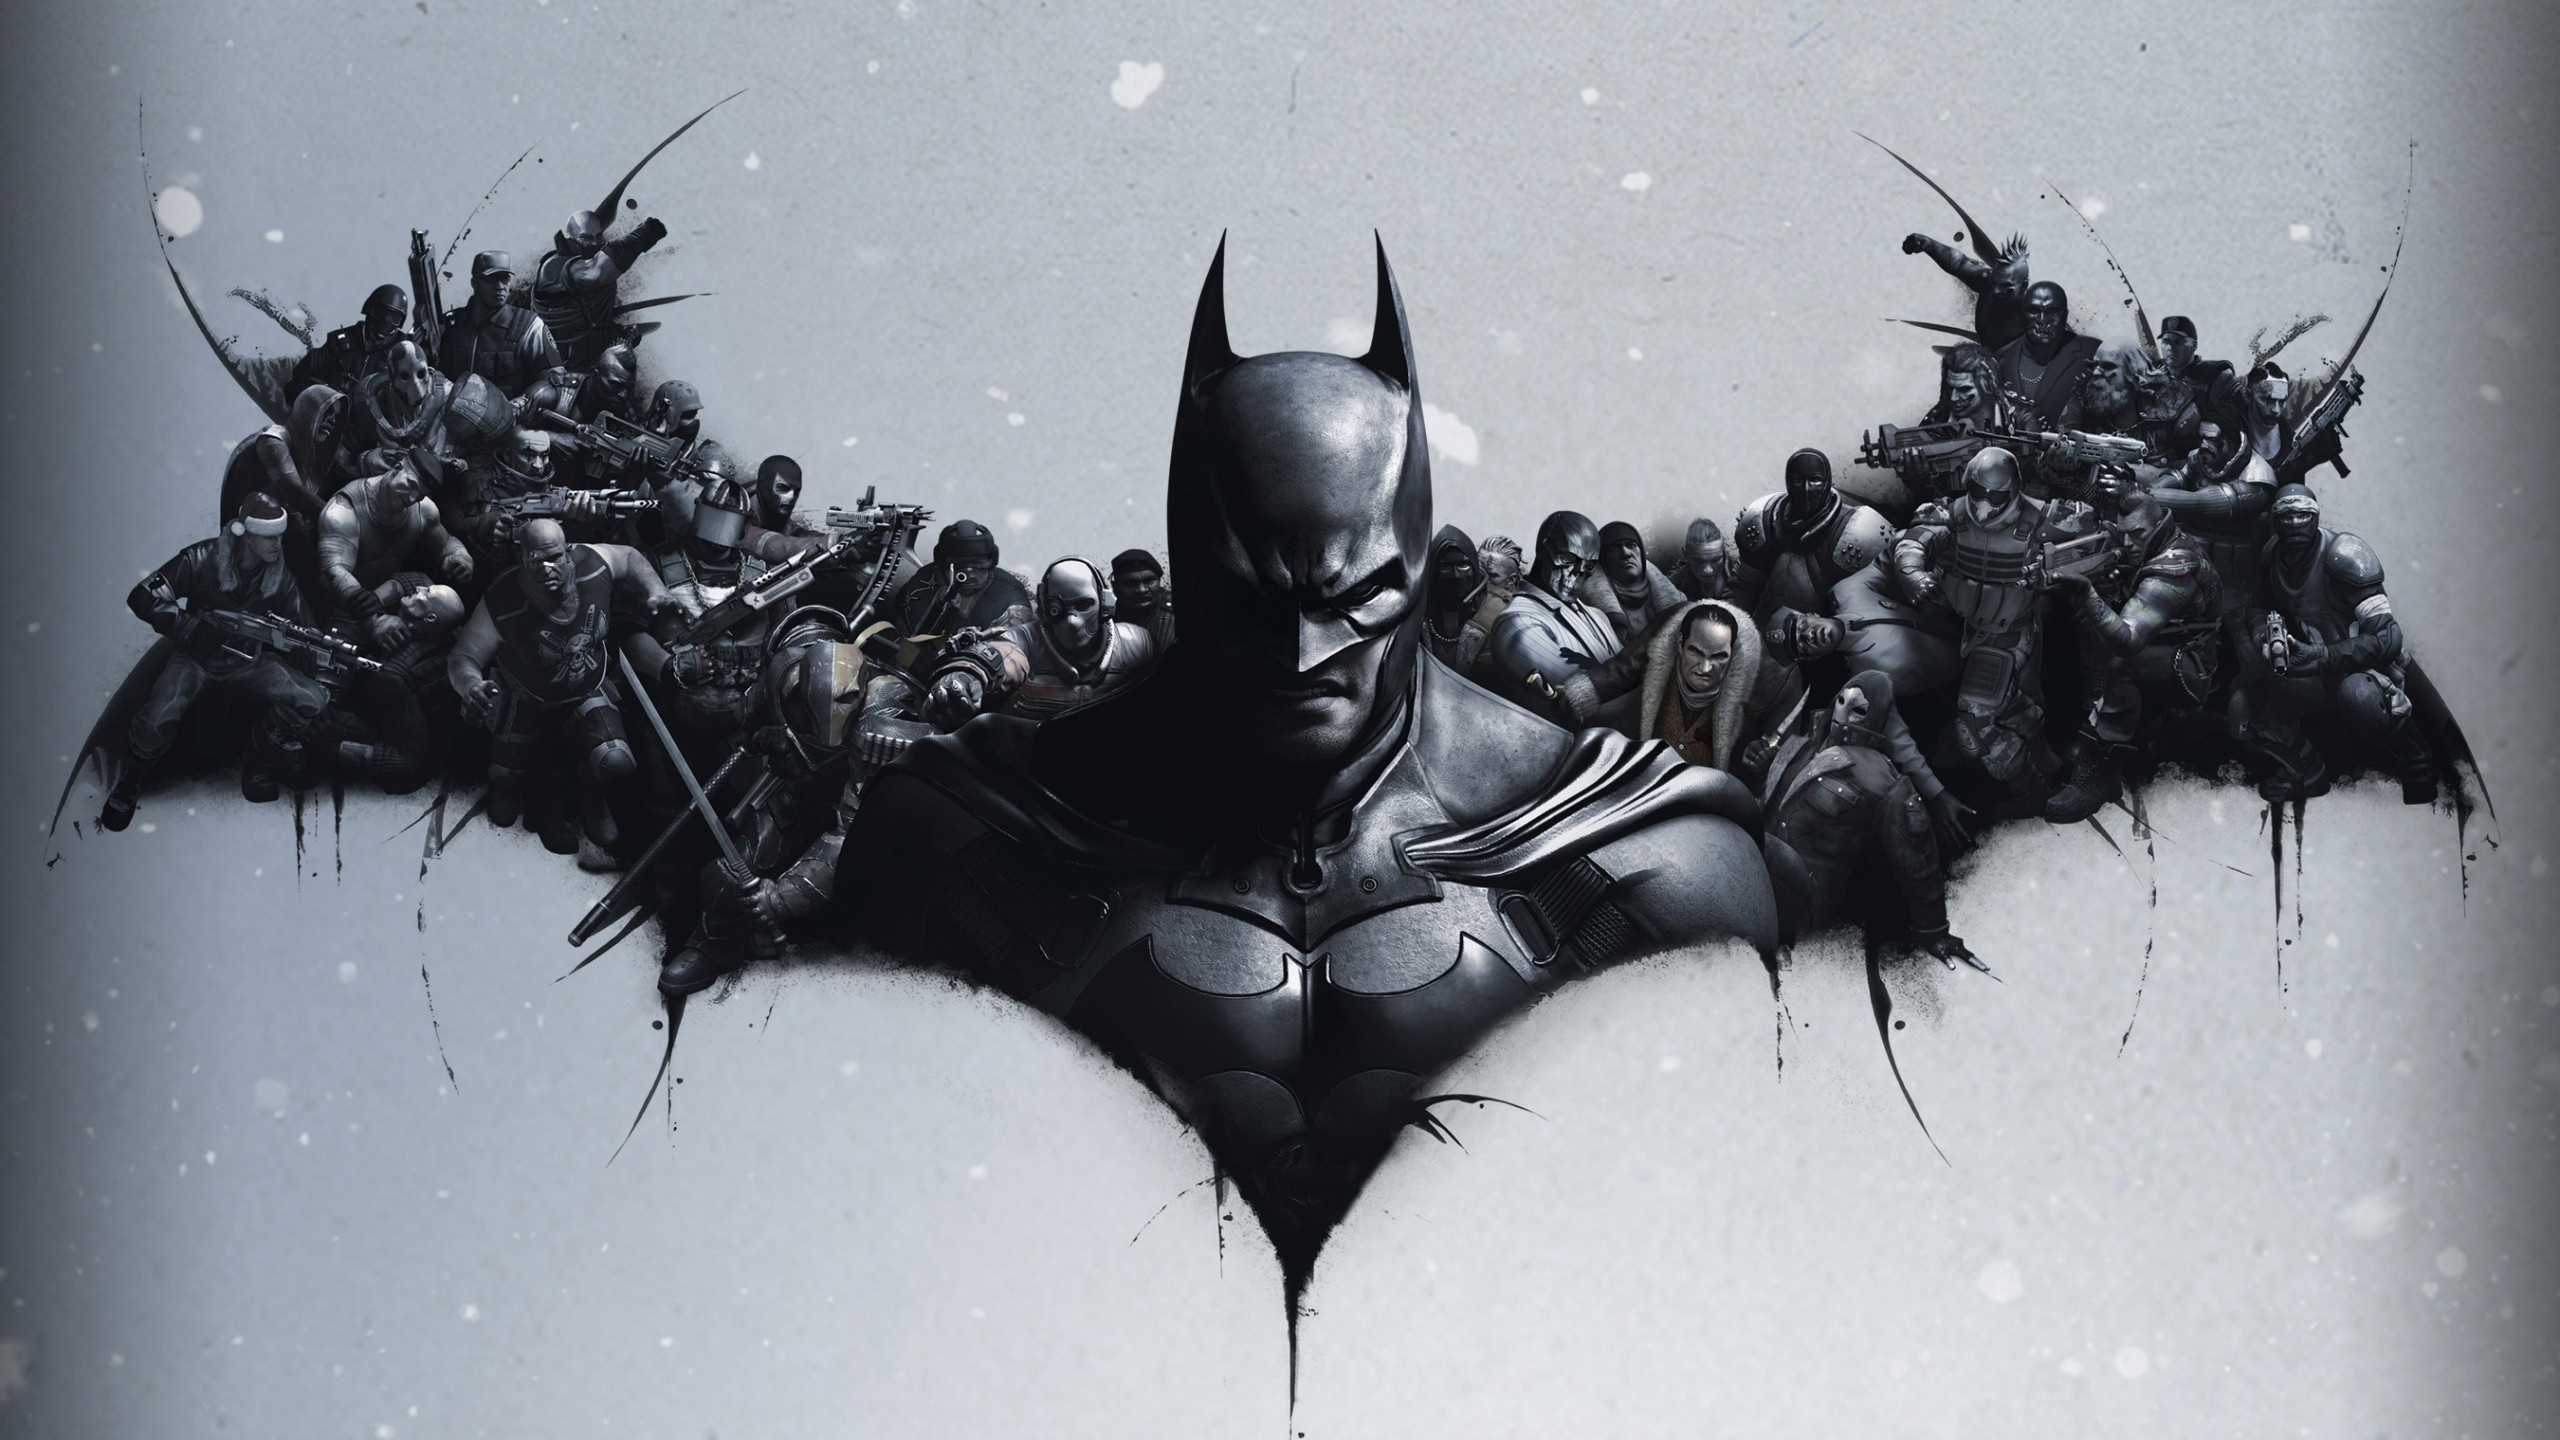 蝙蝠侠精神病院的起源, 蝙蝠侠, 蝙蝠侠阿卡汉姆的城市, 蝙蝠侠的骑士精神病院, 艺术 壁纸 2560x1440 允许